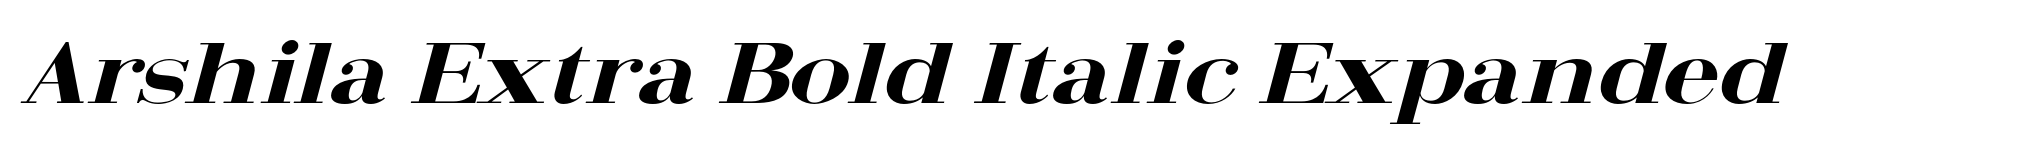 Arshila Extra Bold Italic Expanded image